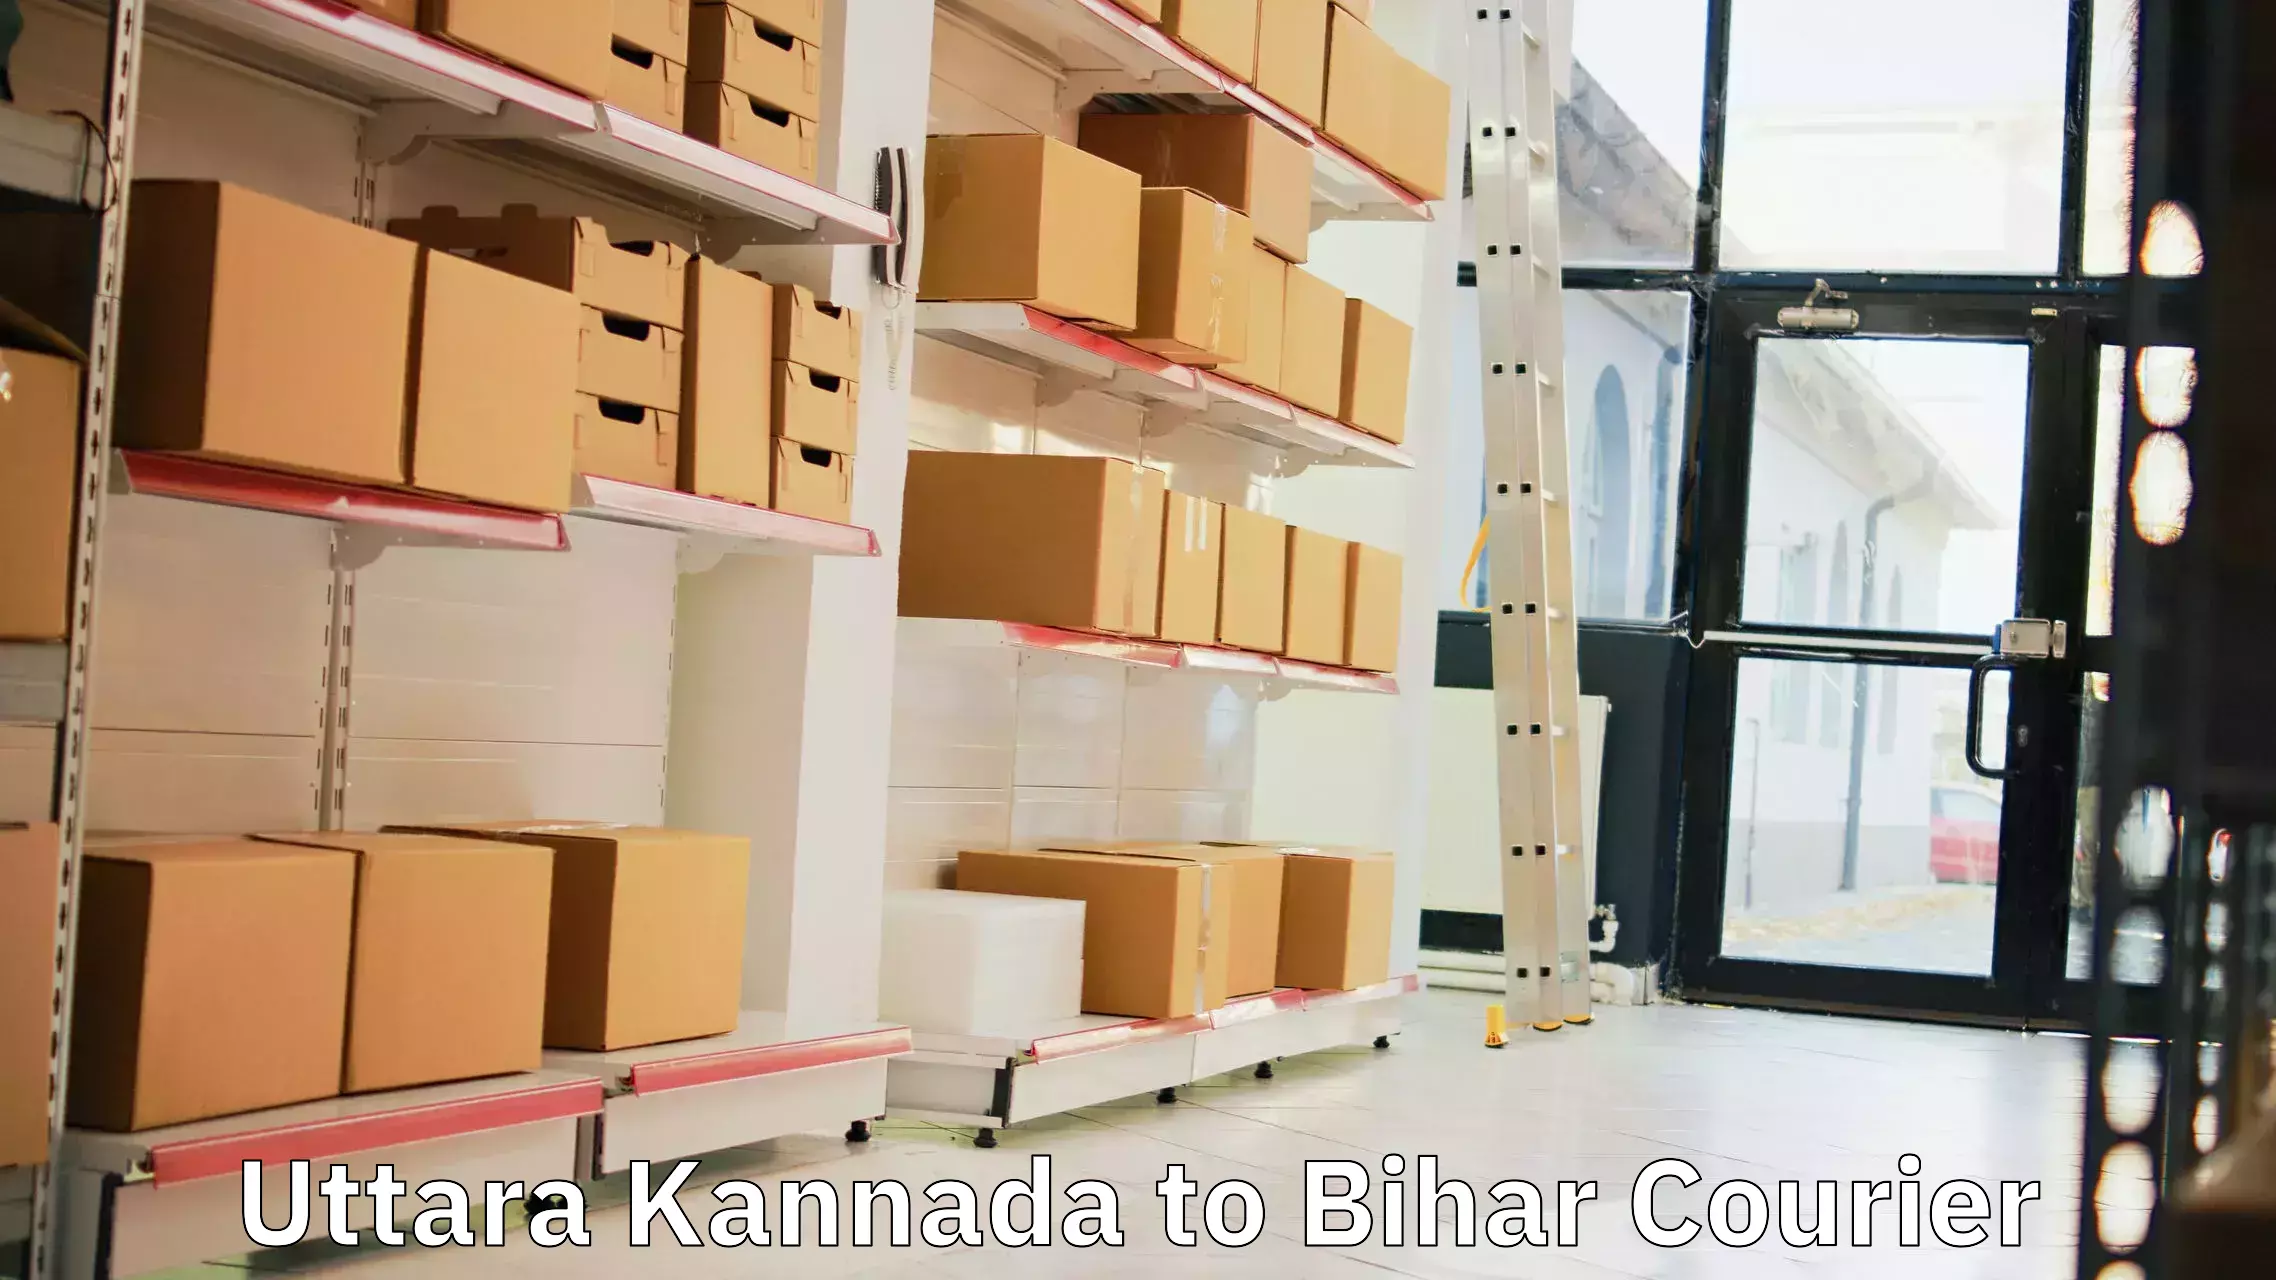 Courier service innovation Uttara Kannada to Kamtaul